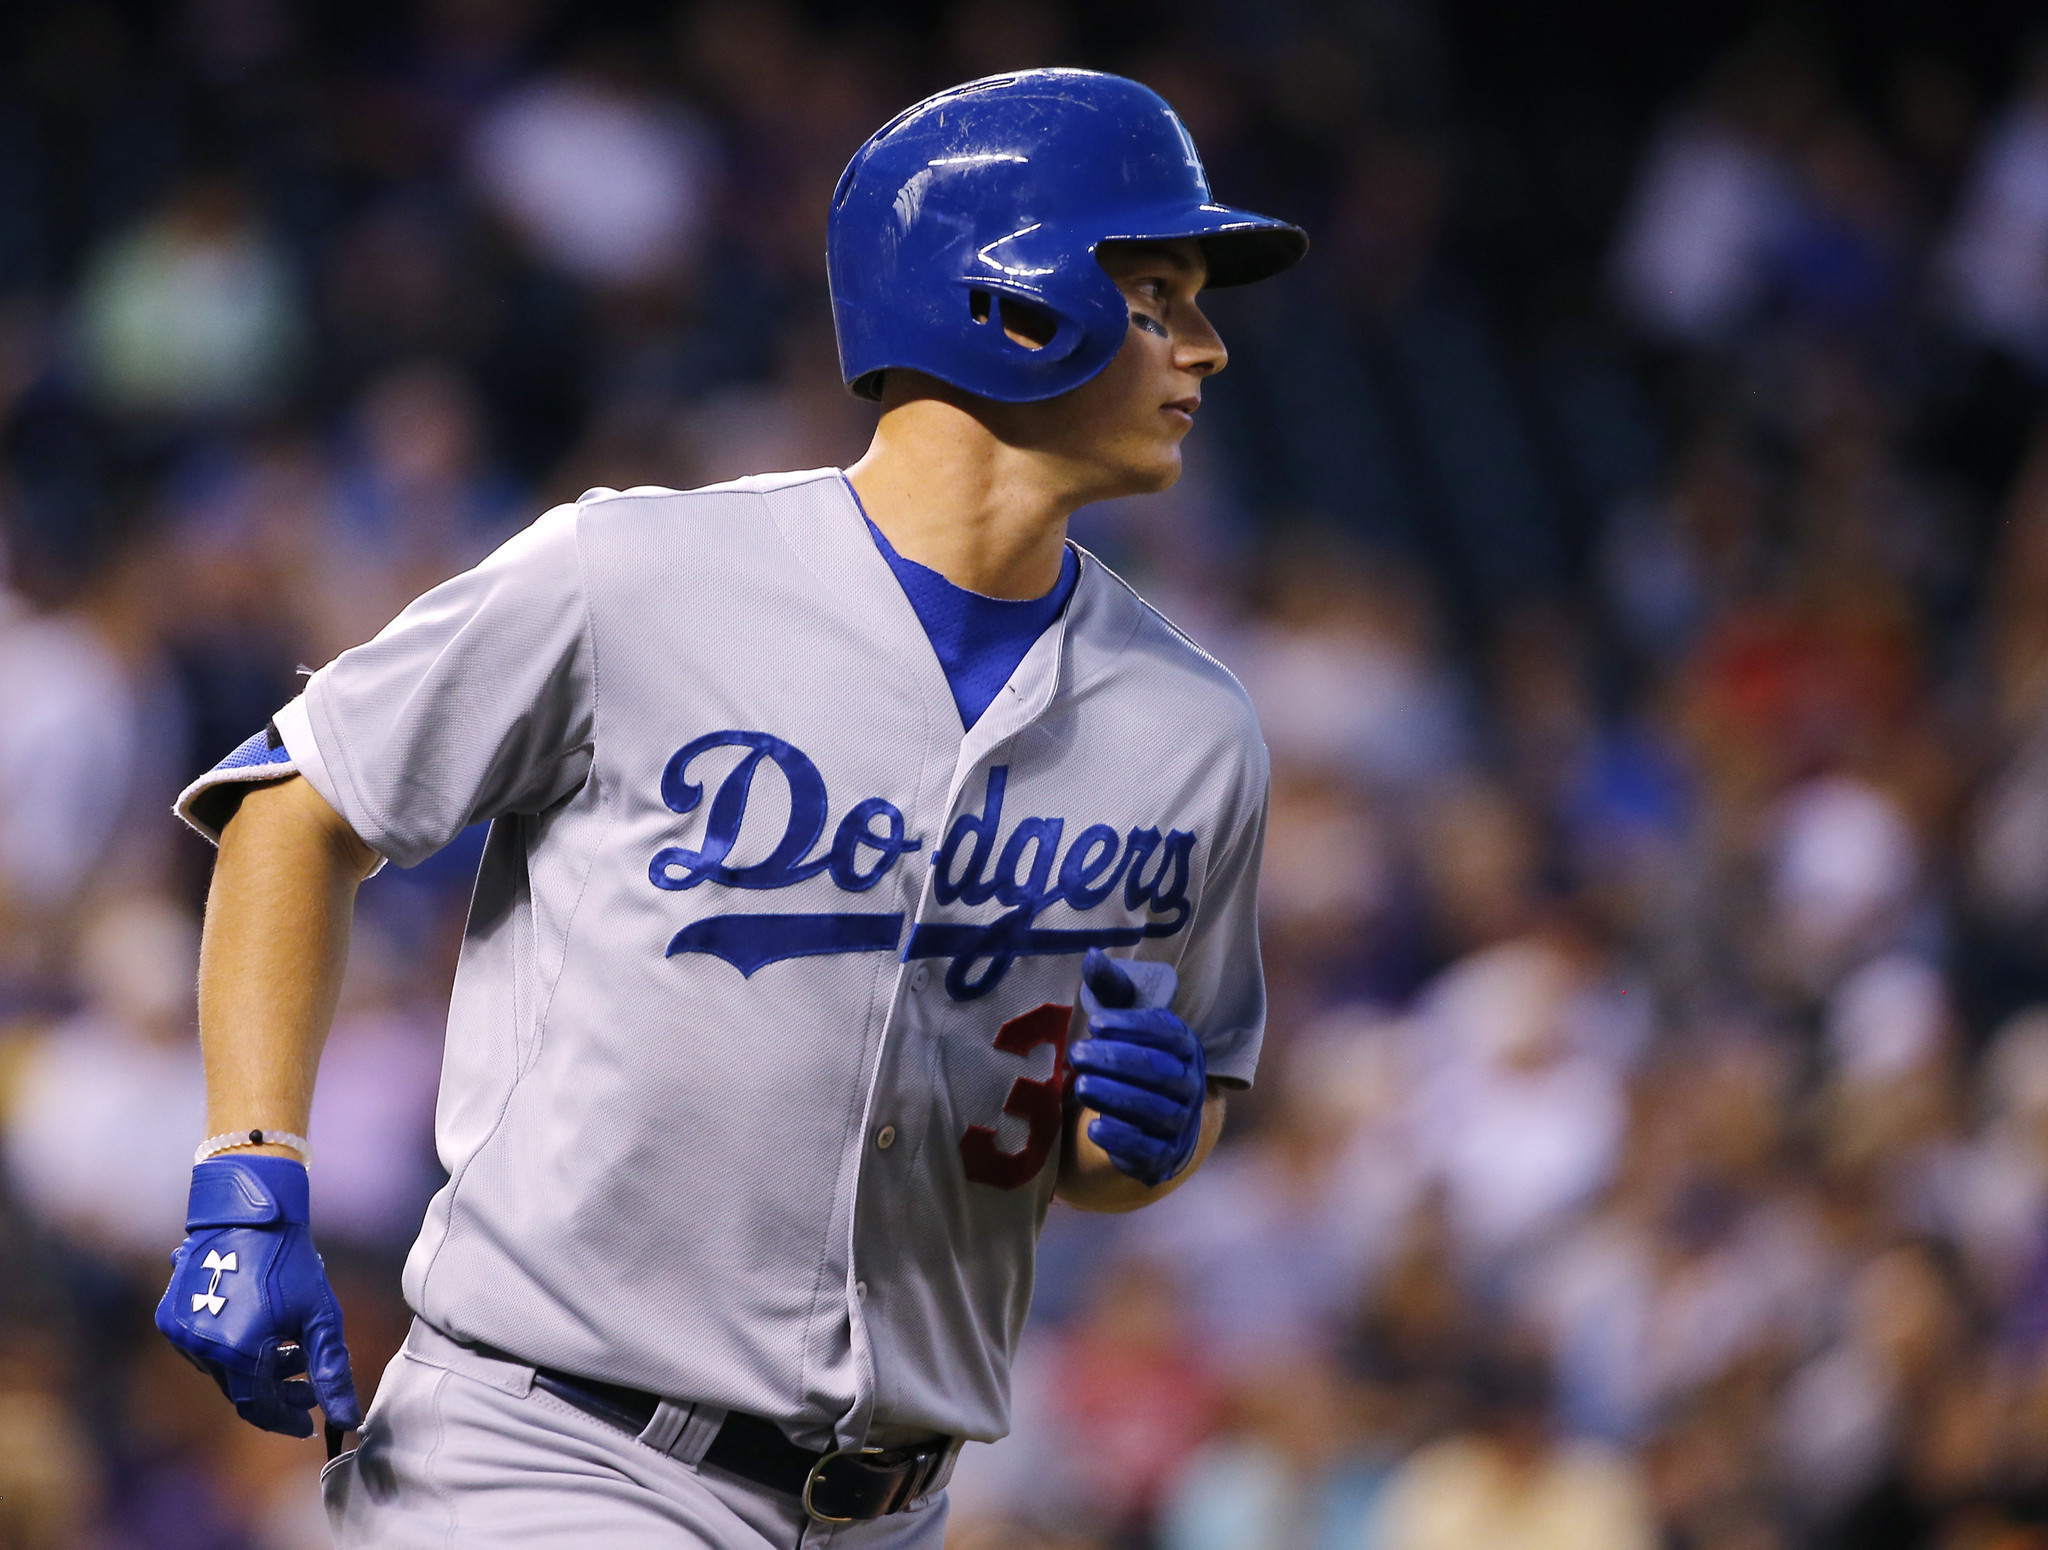 Dodgers rookie Joc Pederson blasts 15th home run - LA Times